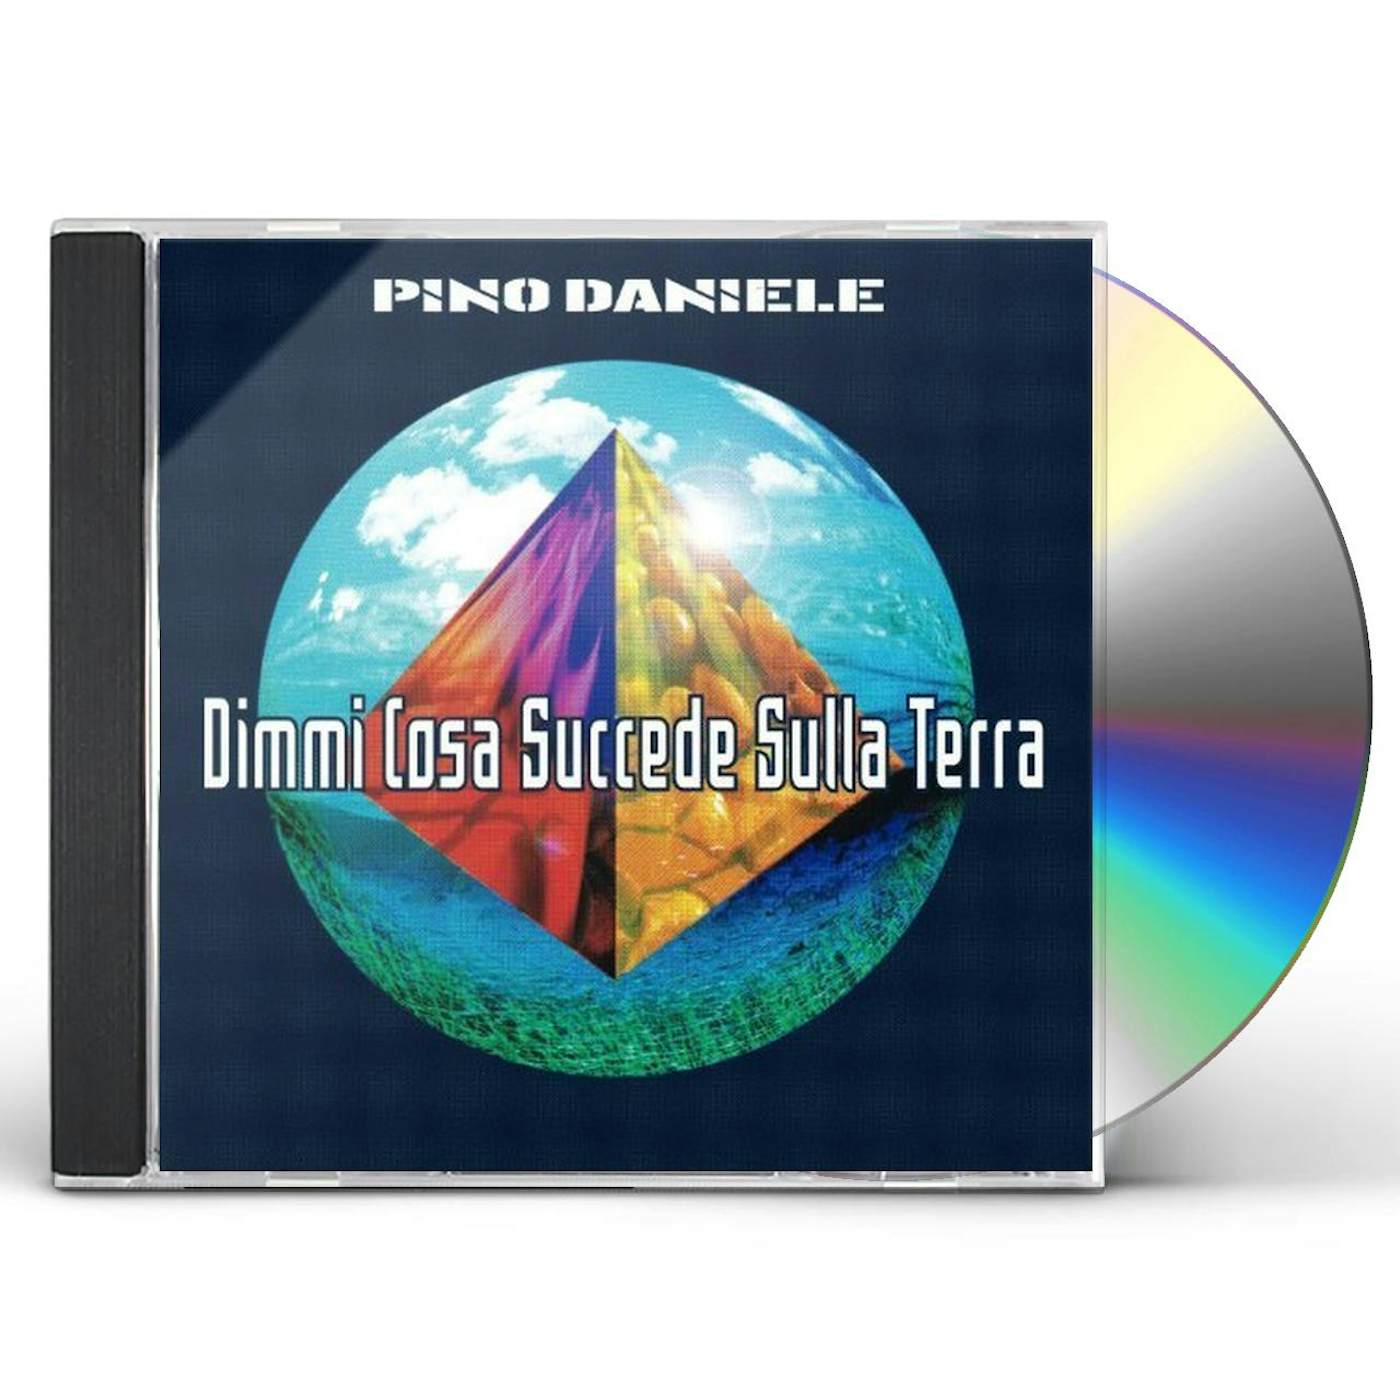 Pino Daniele DIMMI COSA SUCCEDE SULLA TERRA CD